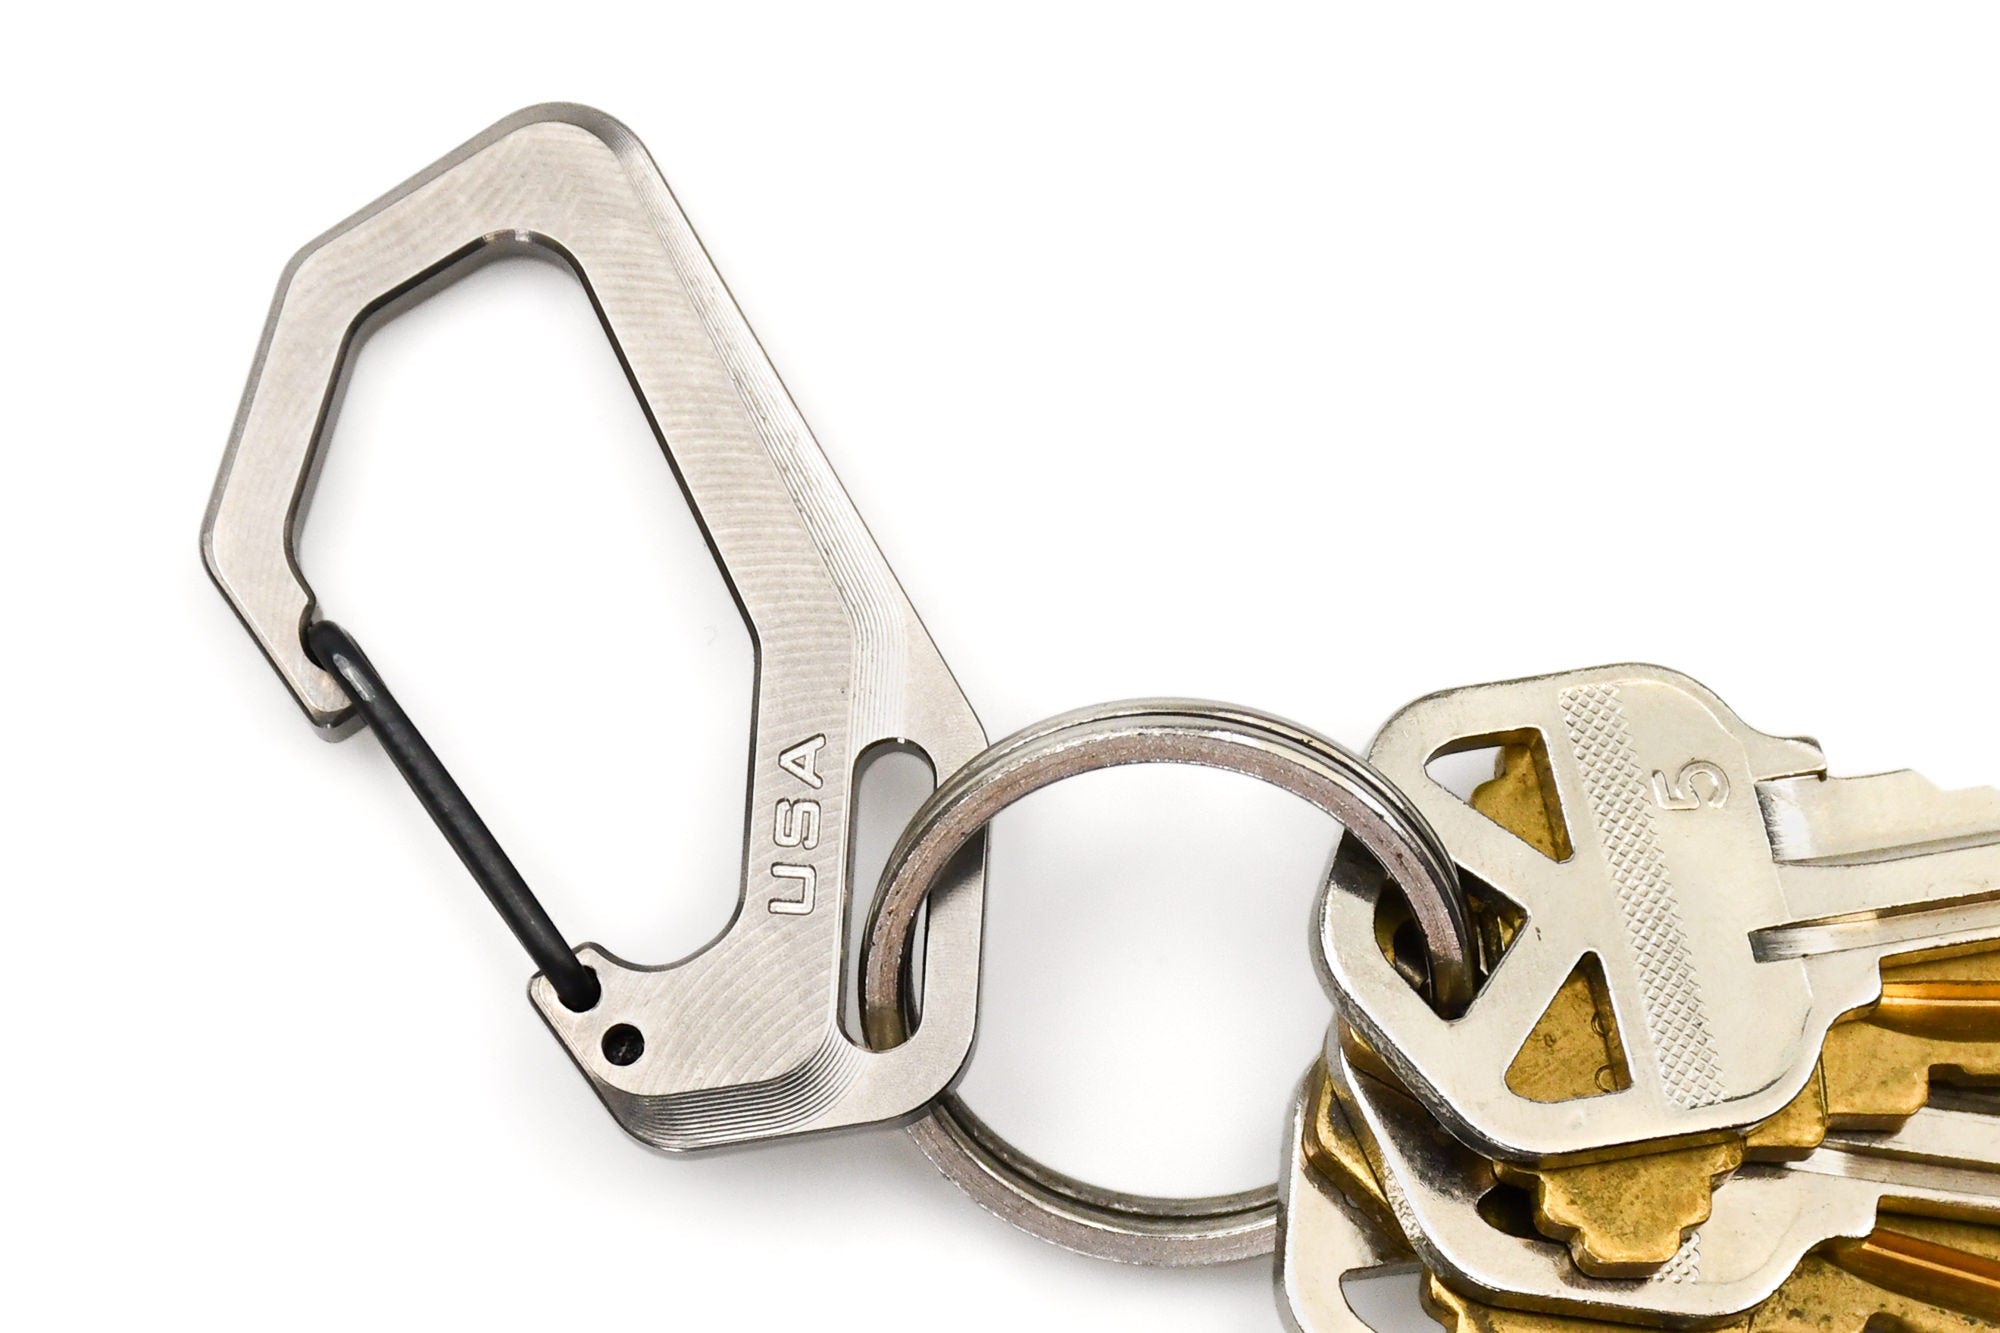 Titanium Keychain Carabiner Clip Quick Release Multi Tool Key